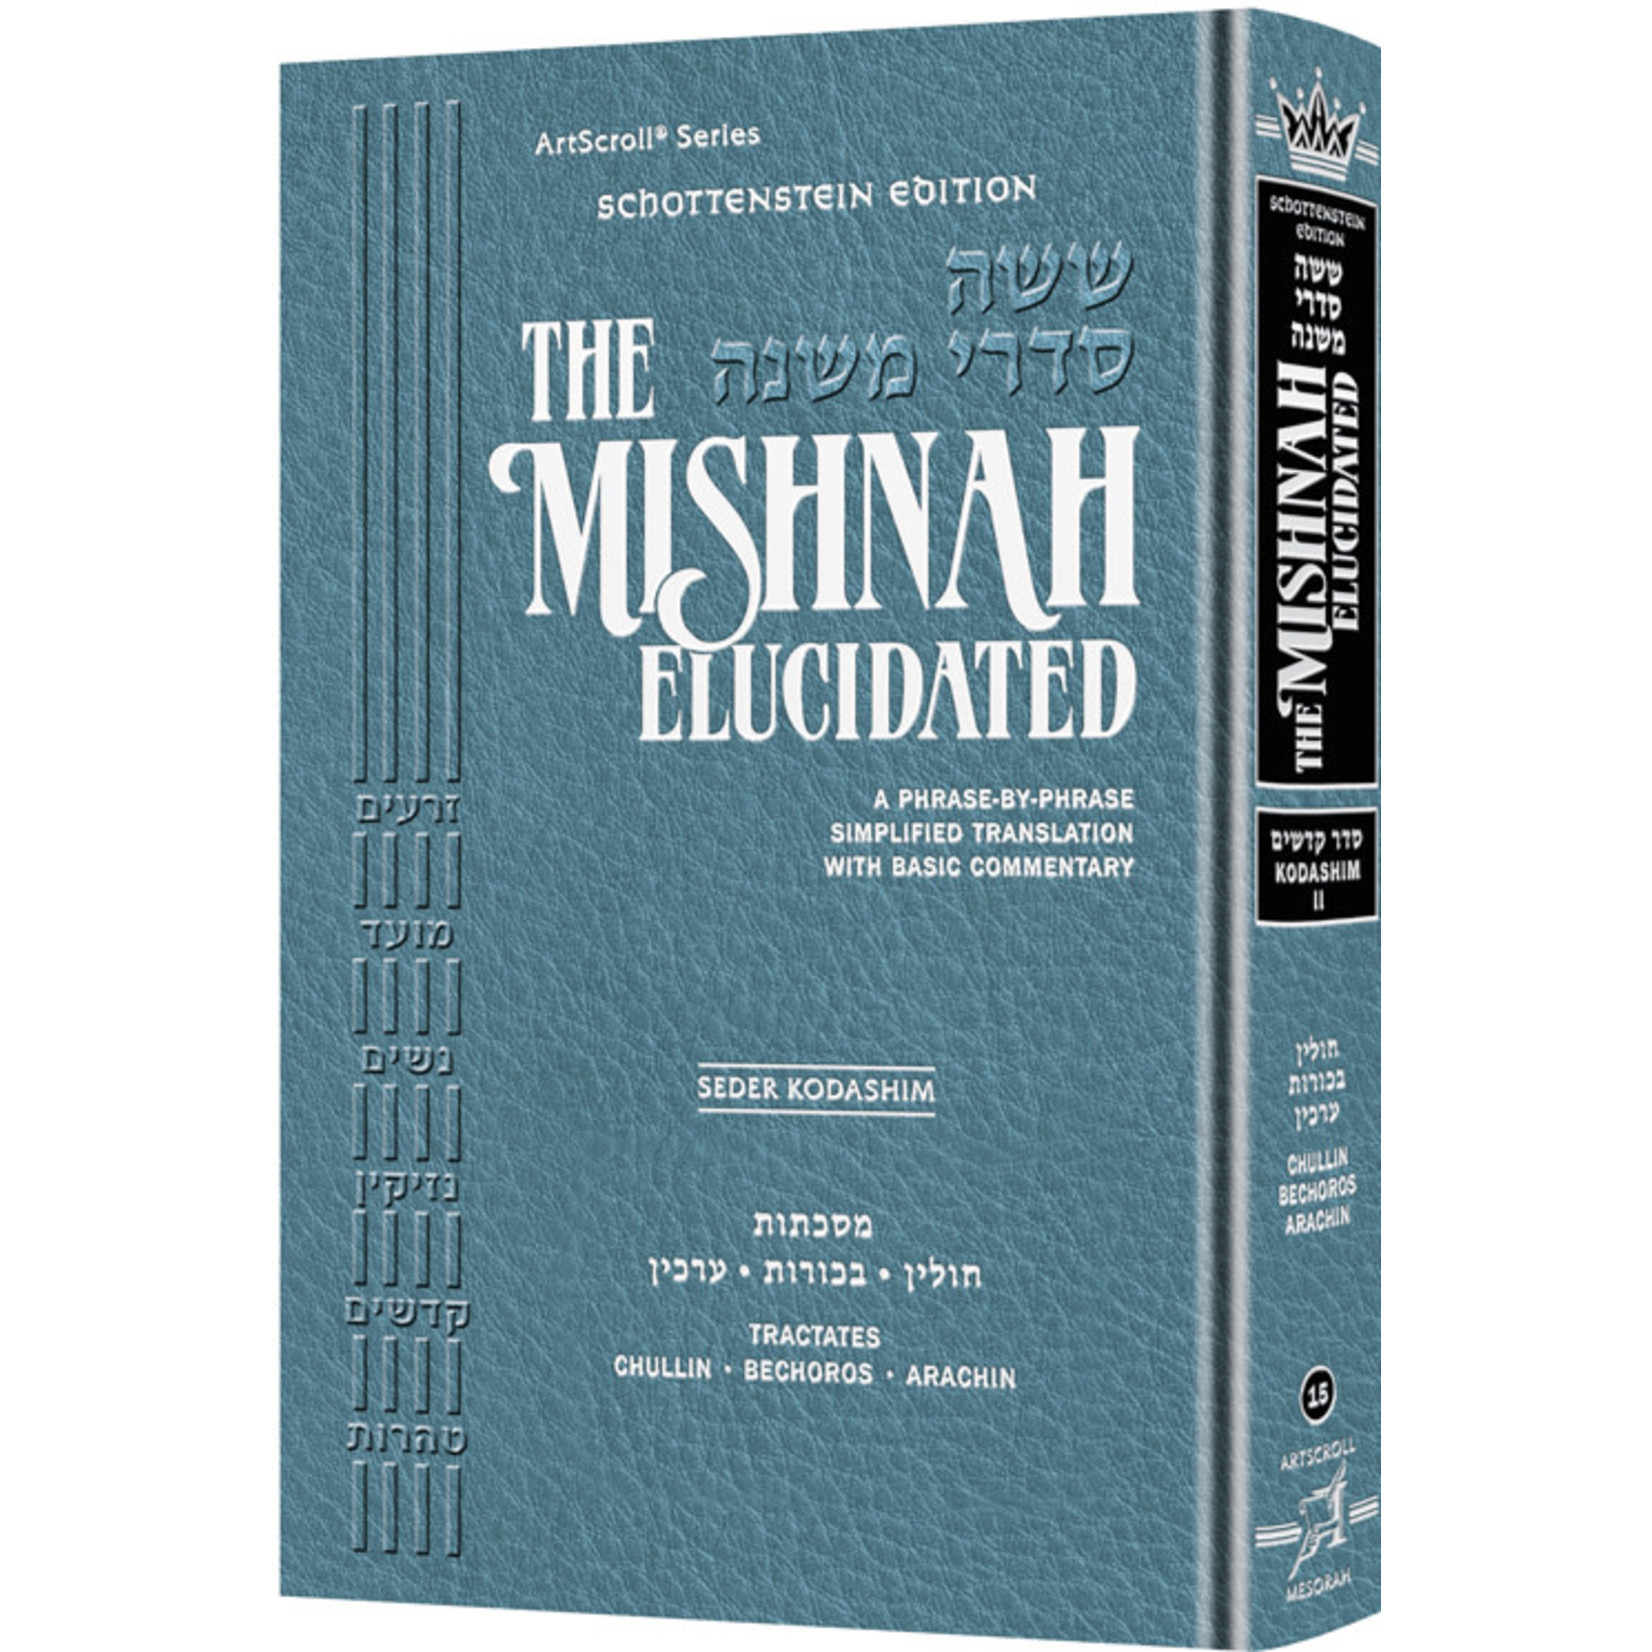 Kodashim Vol. 2 - ArtScroll Schottenstein Edition Hebrew/English Elucidated Mishnah, Full Size